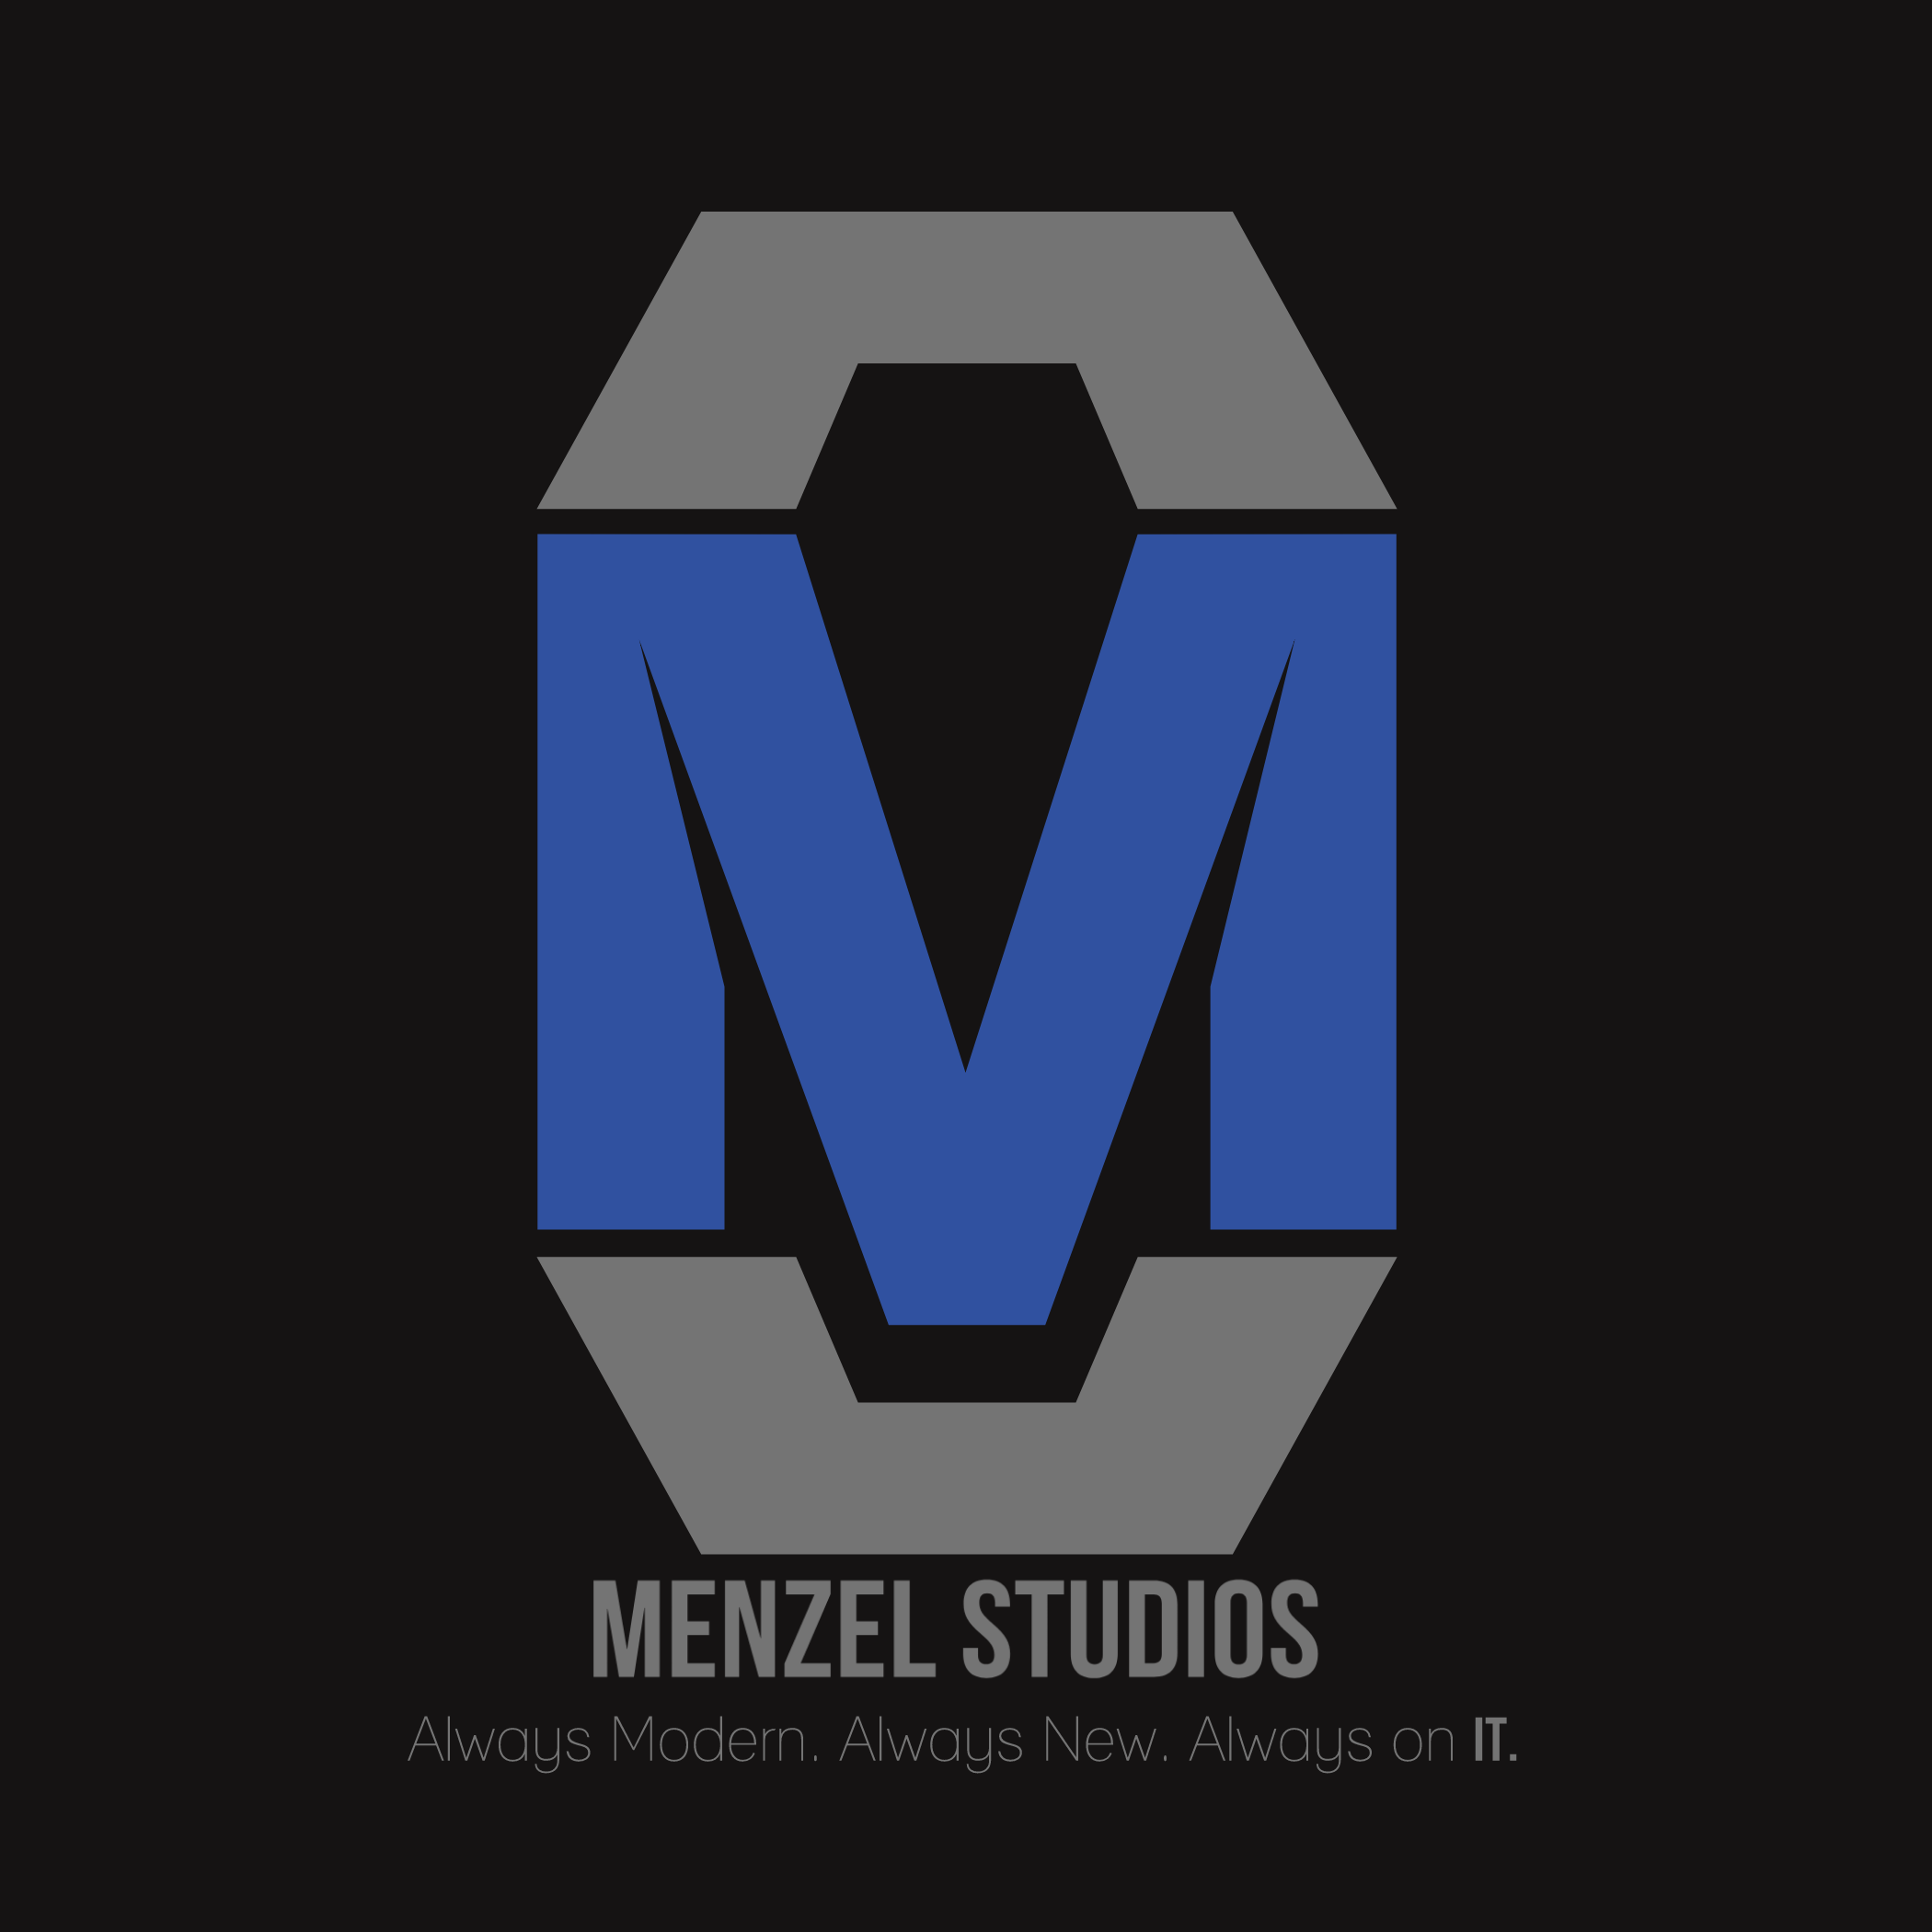 Menzel Studios